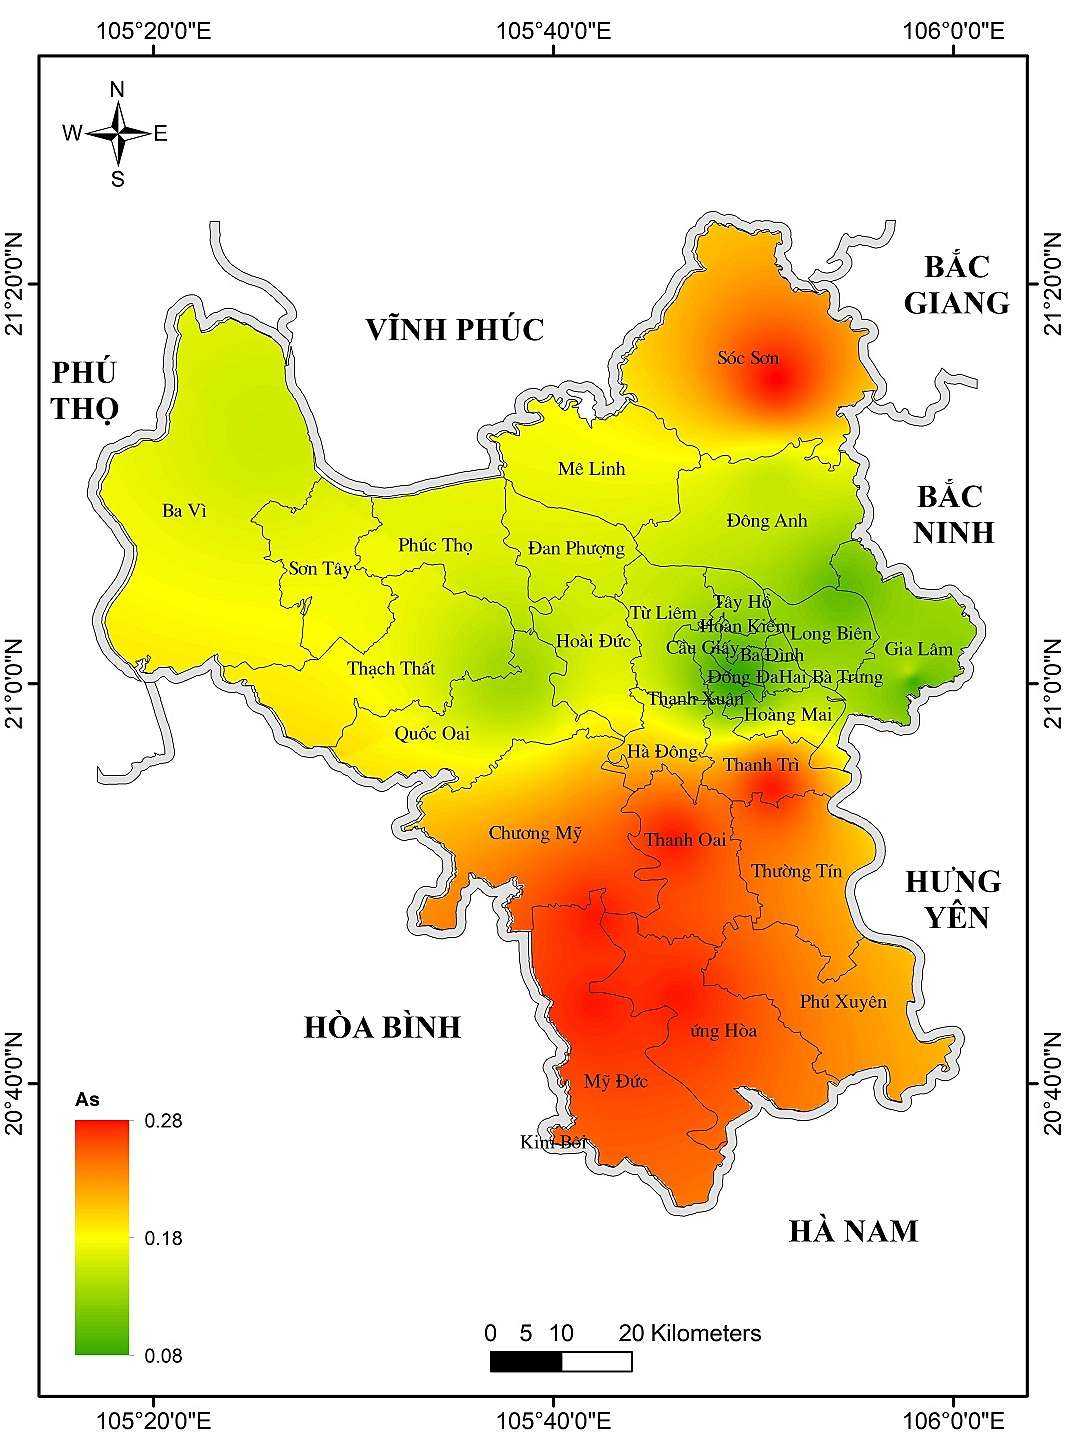 Bản đồ ô nhiễm Asen tại Hà Nội từ 2017-2019 thực hiện bằng chỉ thị rêu Barbula indica.